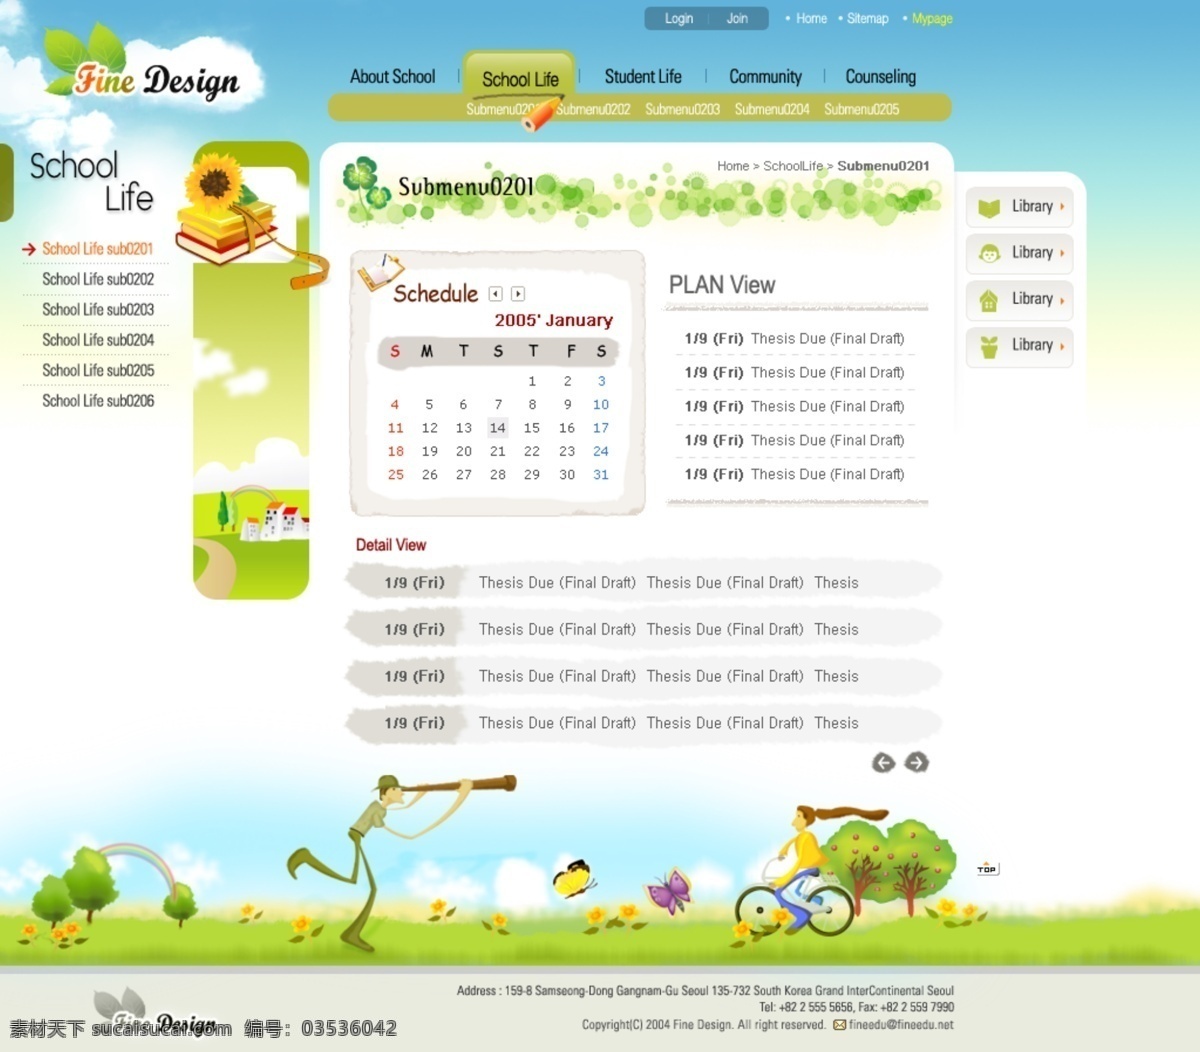 卡通 网页设计 韩国网页设计 卡通网页设计 网页设计素材 网站内页设计 学校网页设计 蓝色 调 网页素材 网页模板